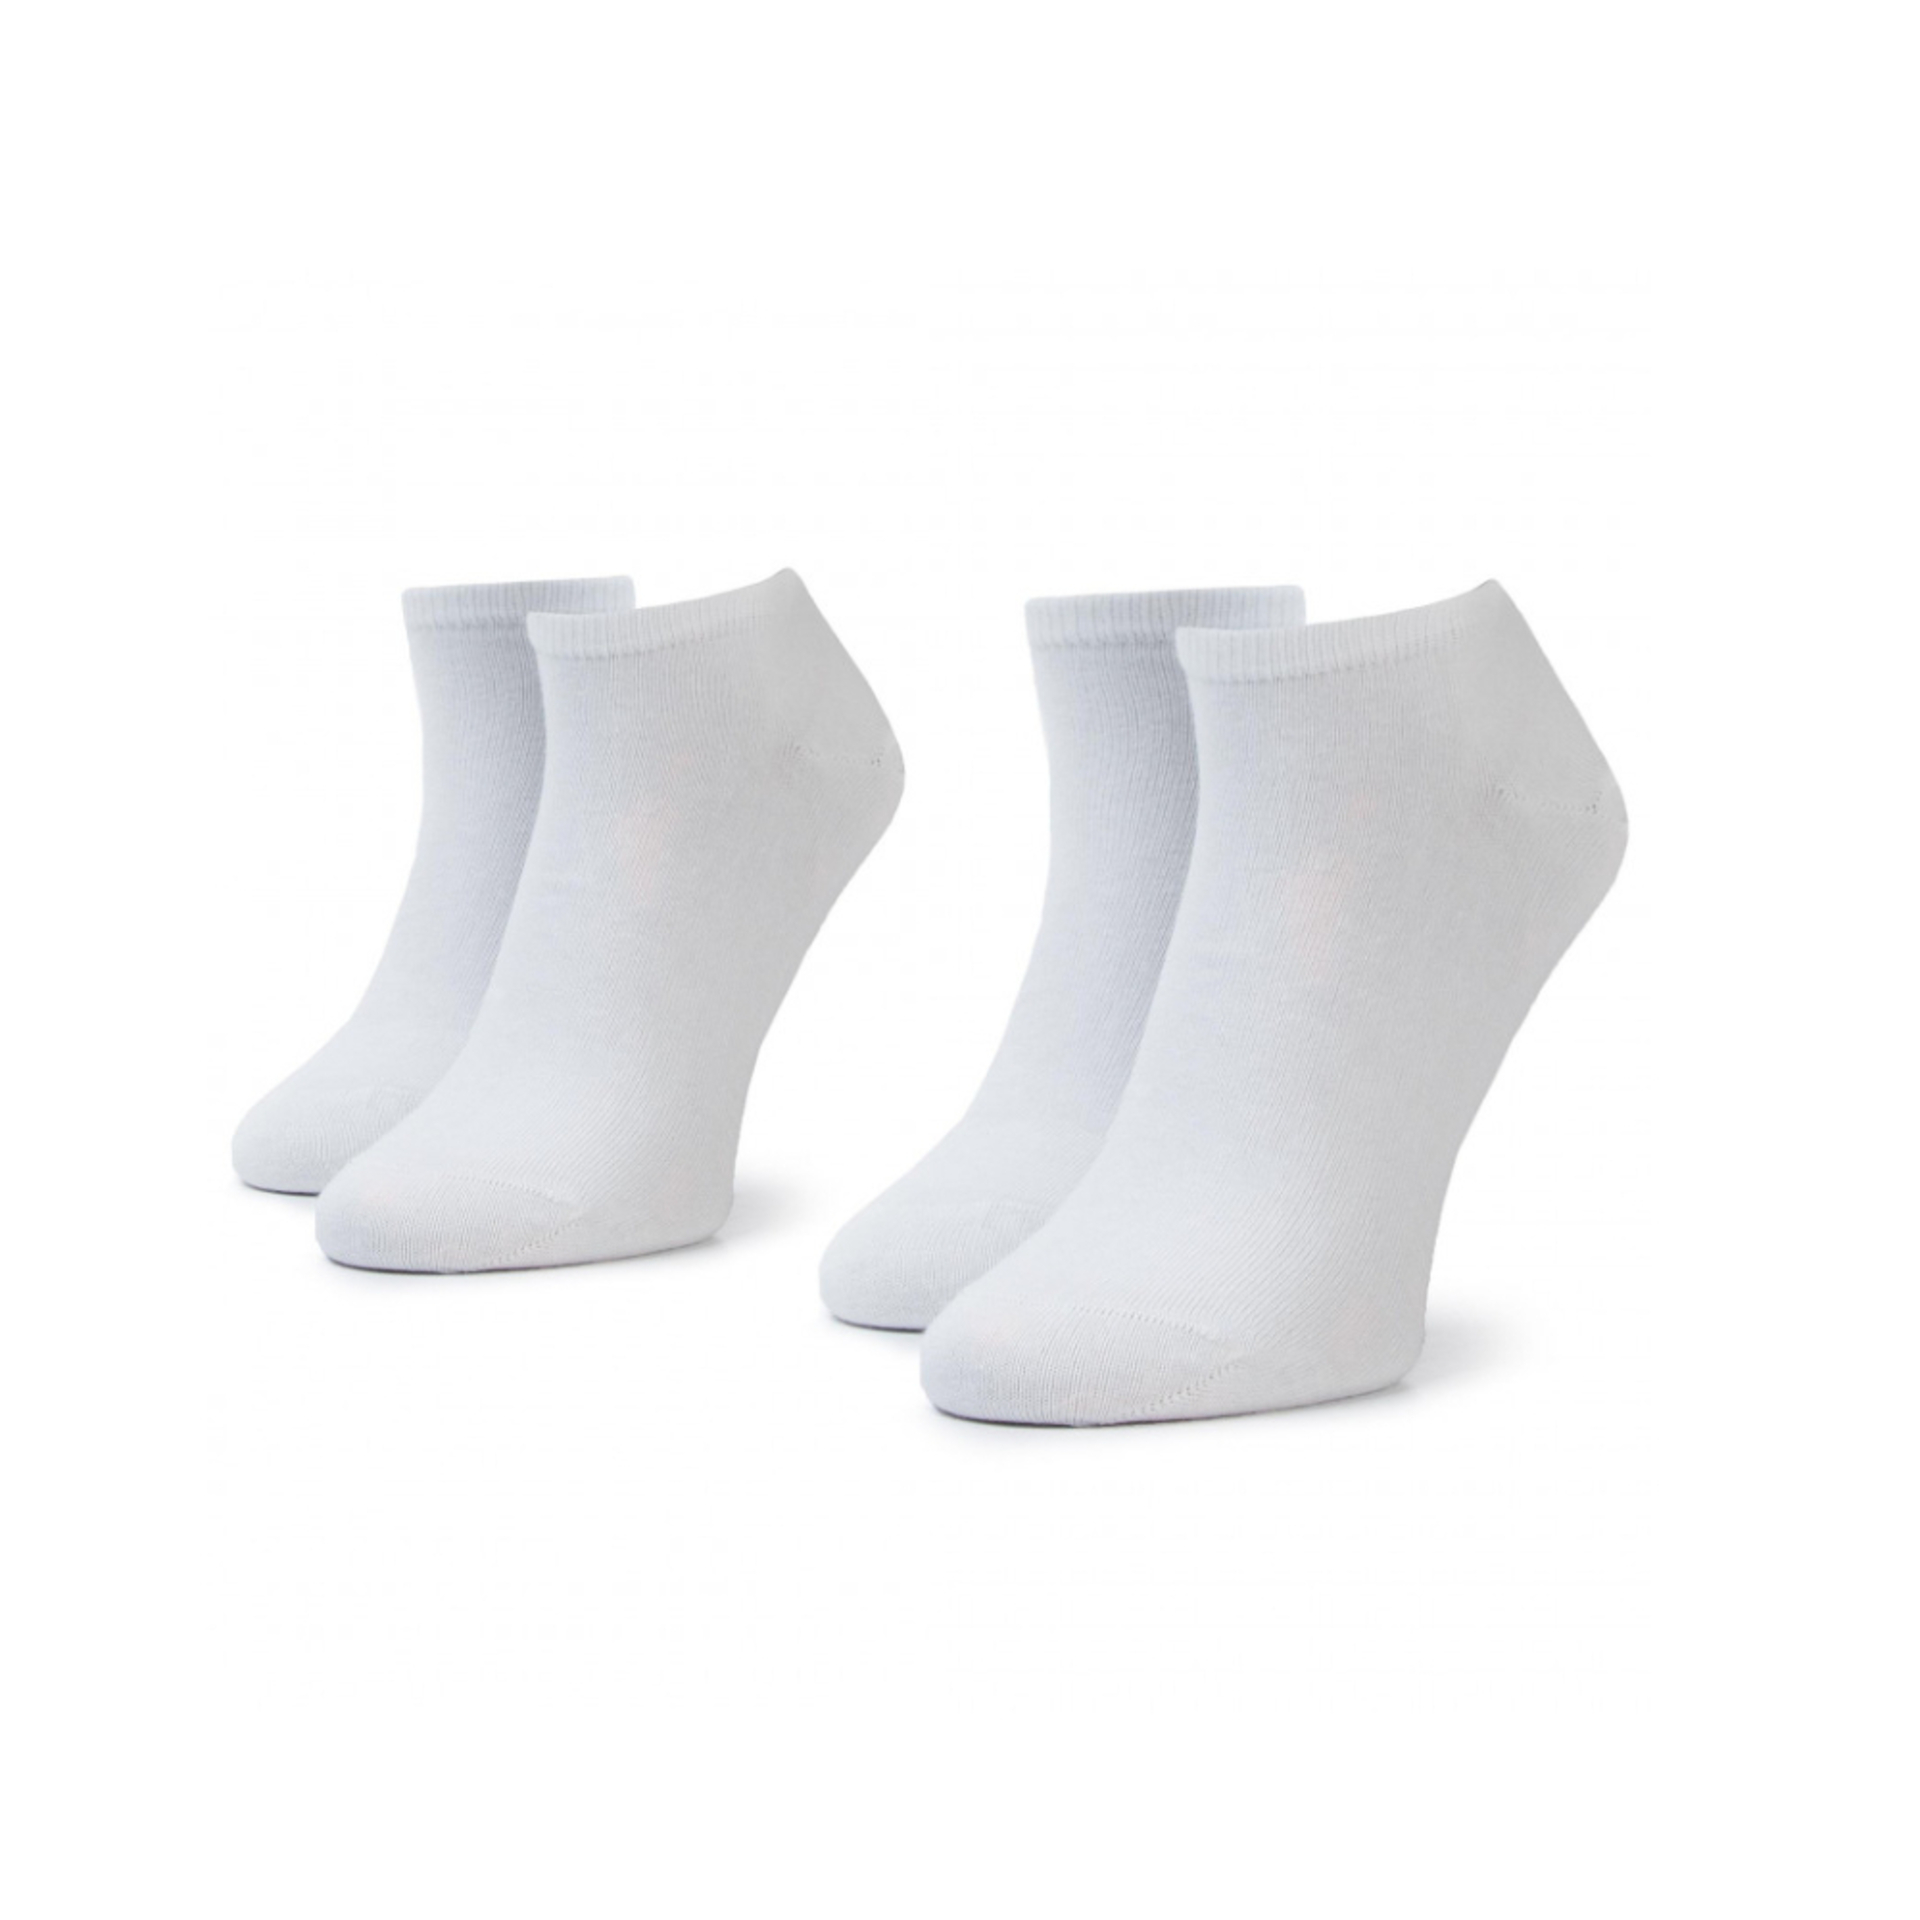 Tommy Hilfiger pánské bílé ponožky 2pack - 43 (300)